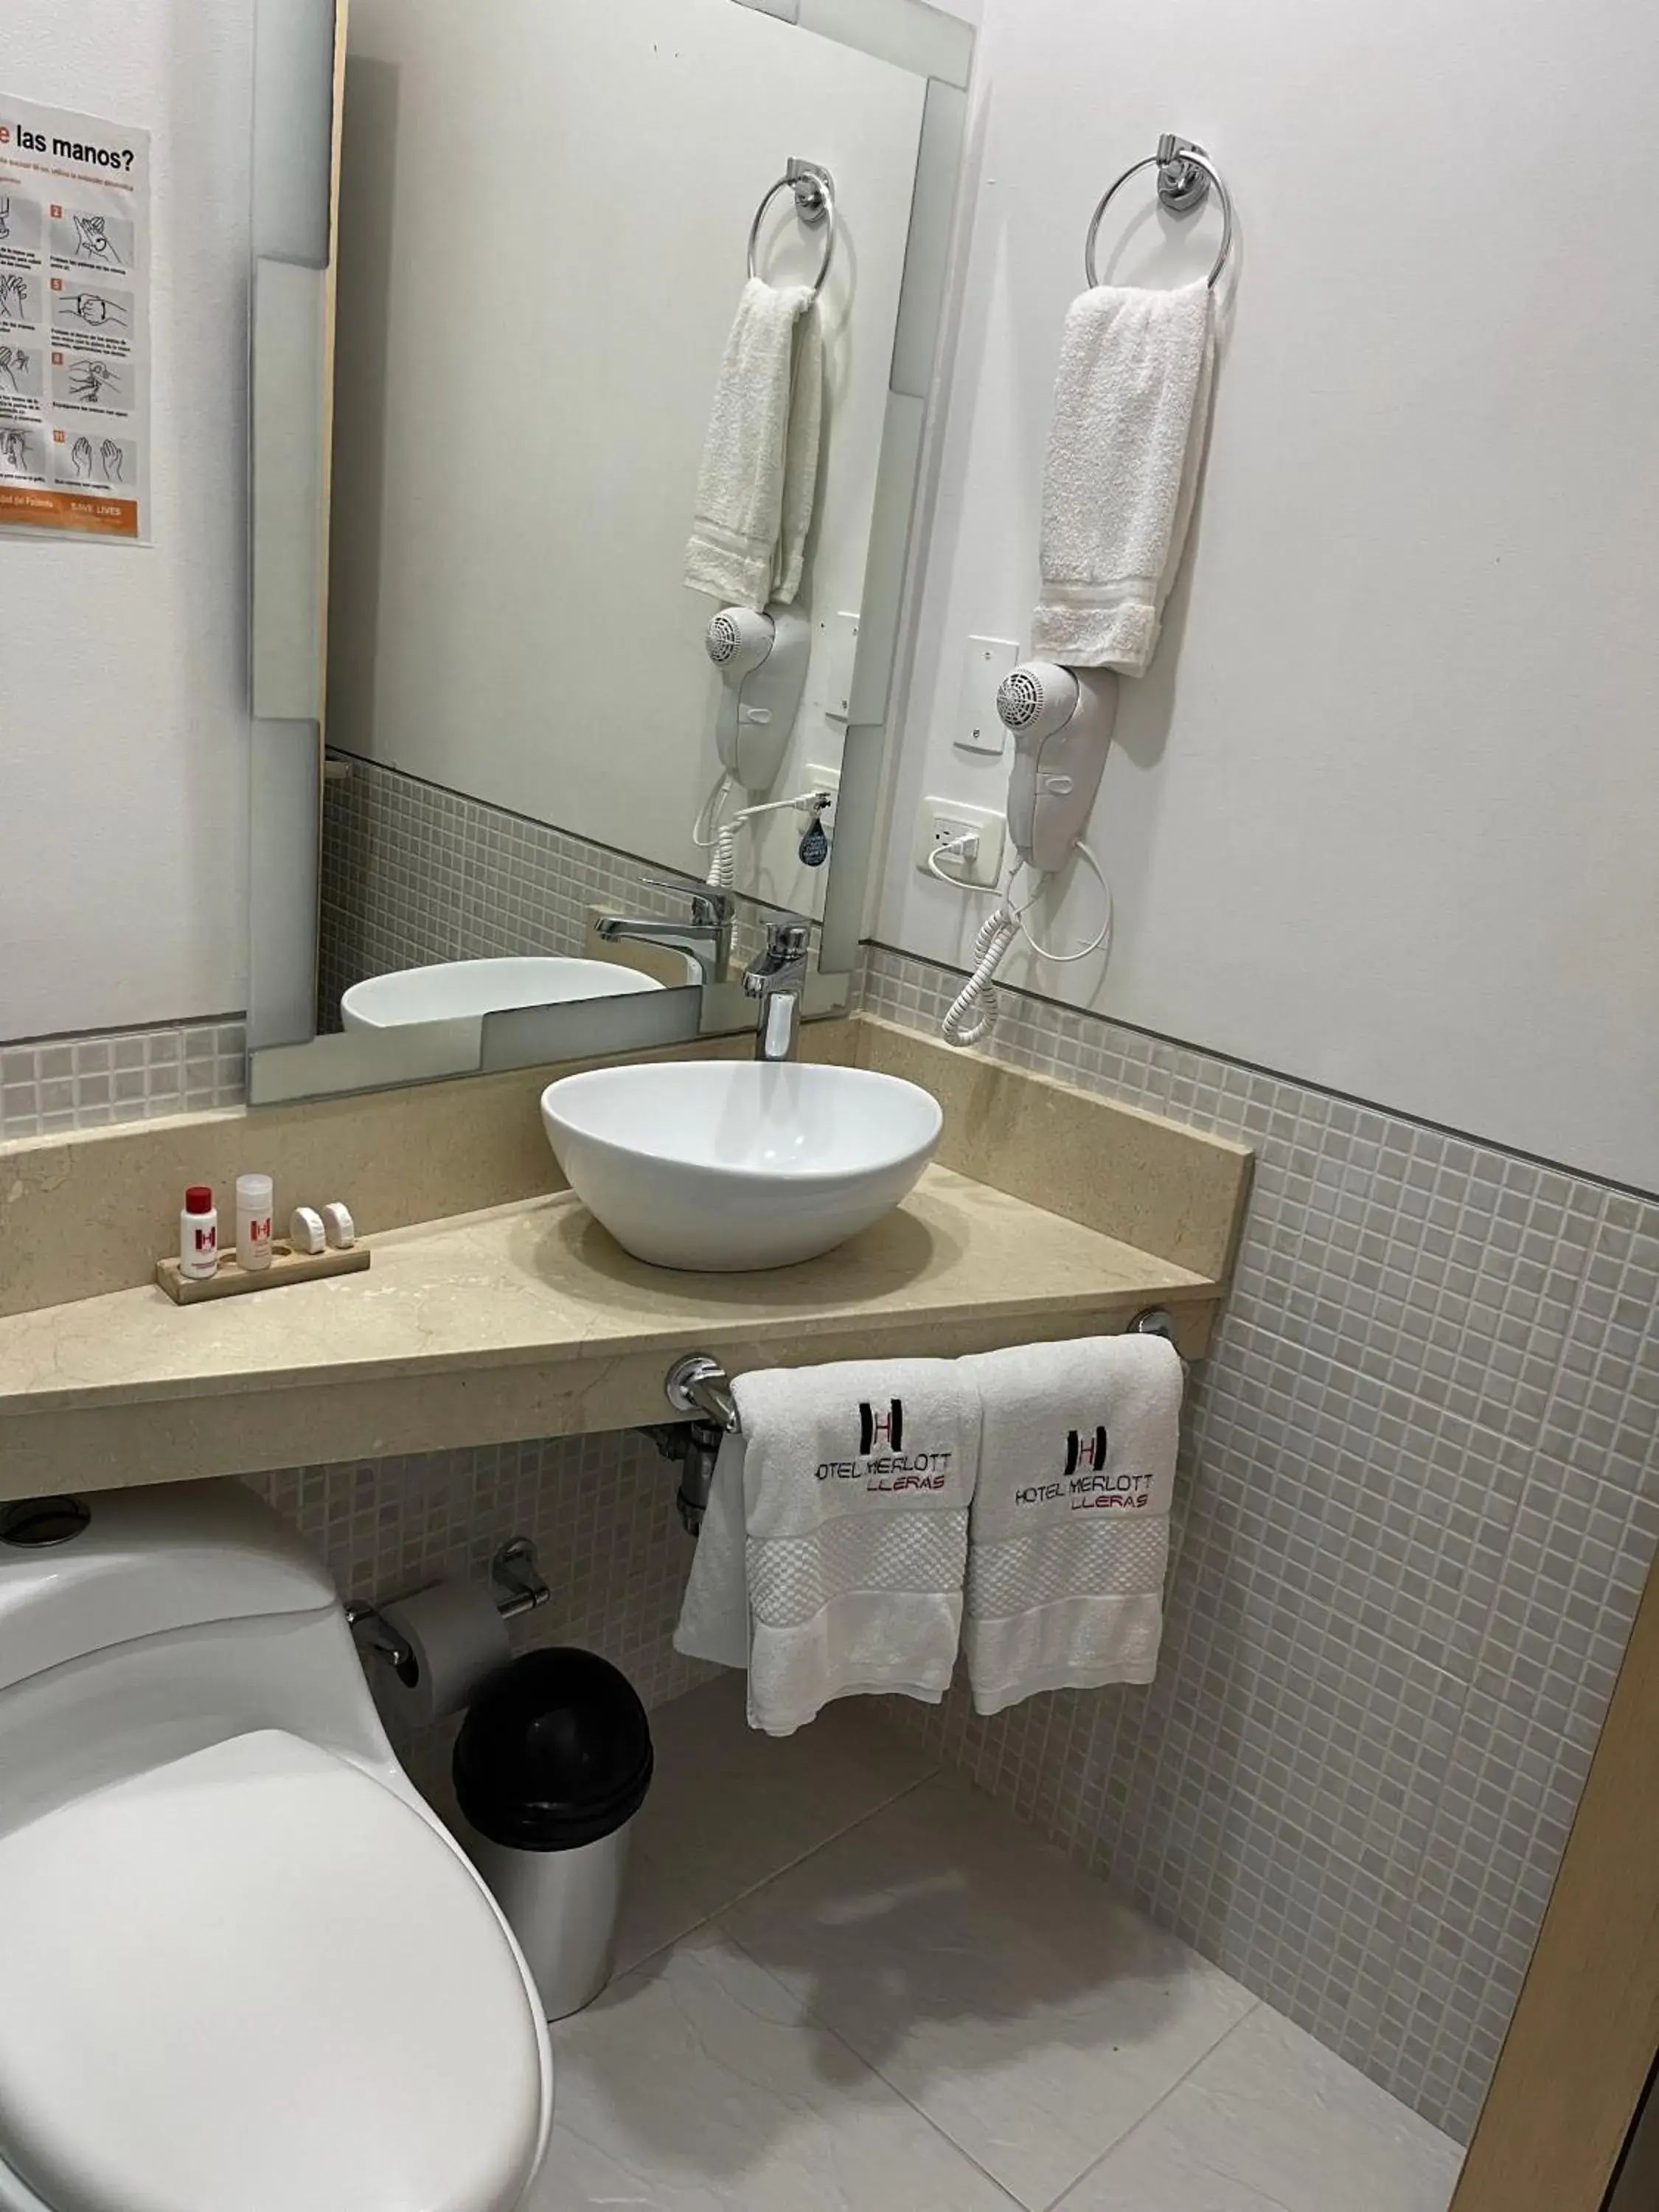 Bathroom in Hotel Merlott Lleras